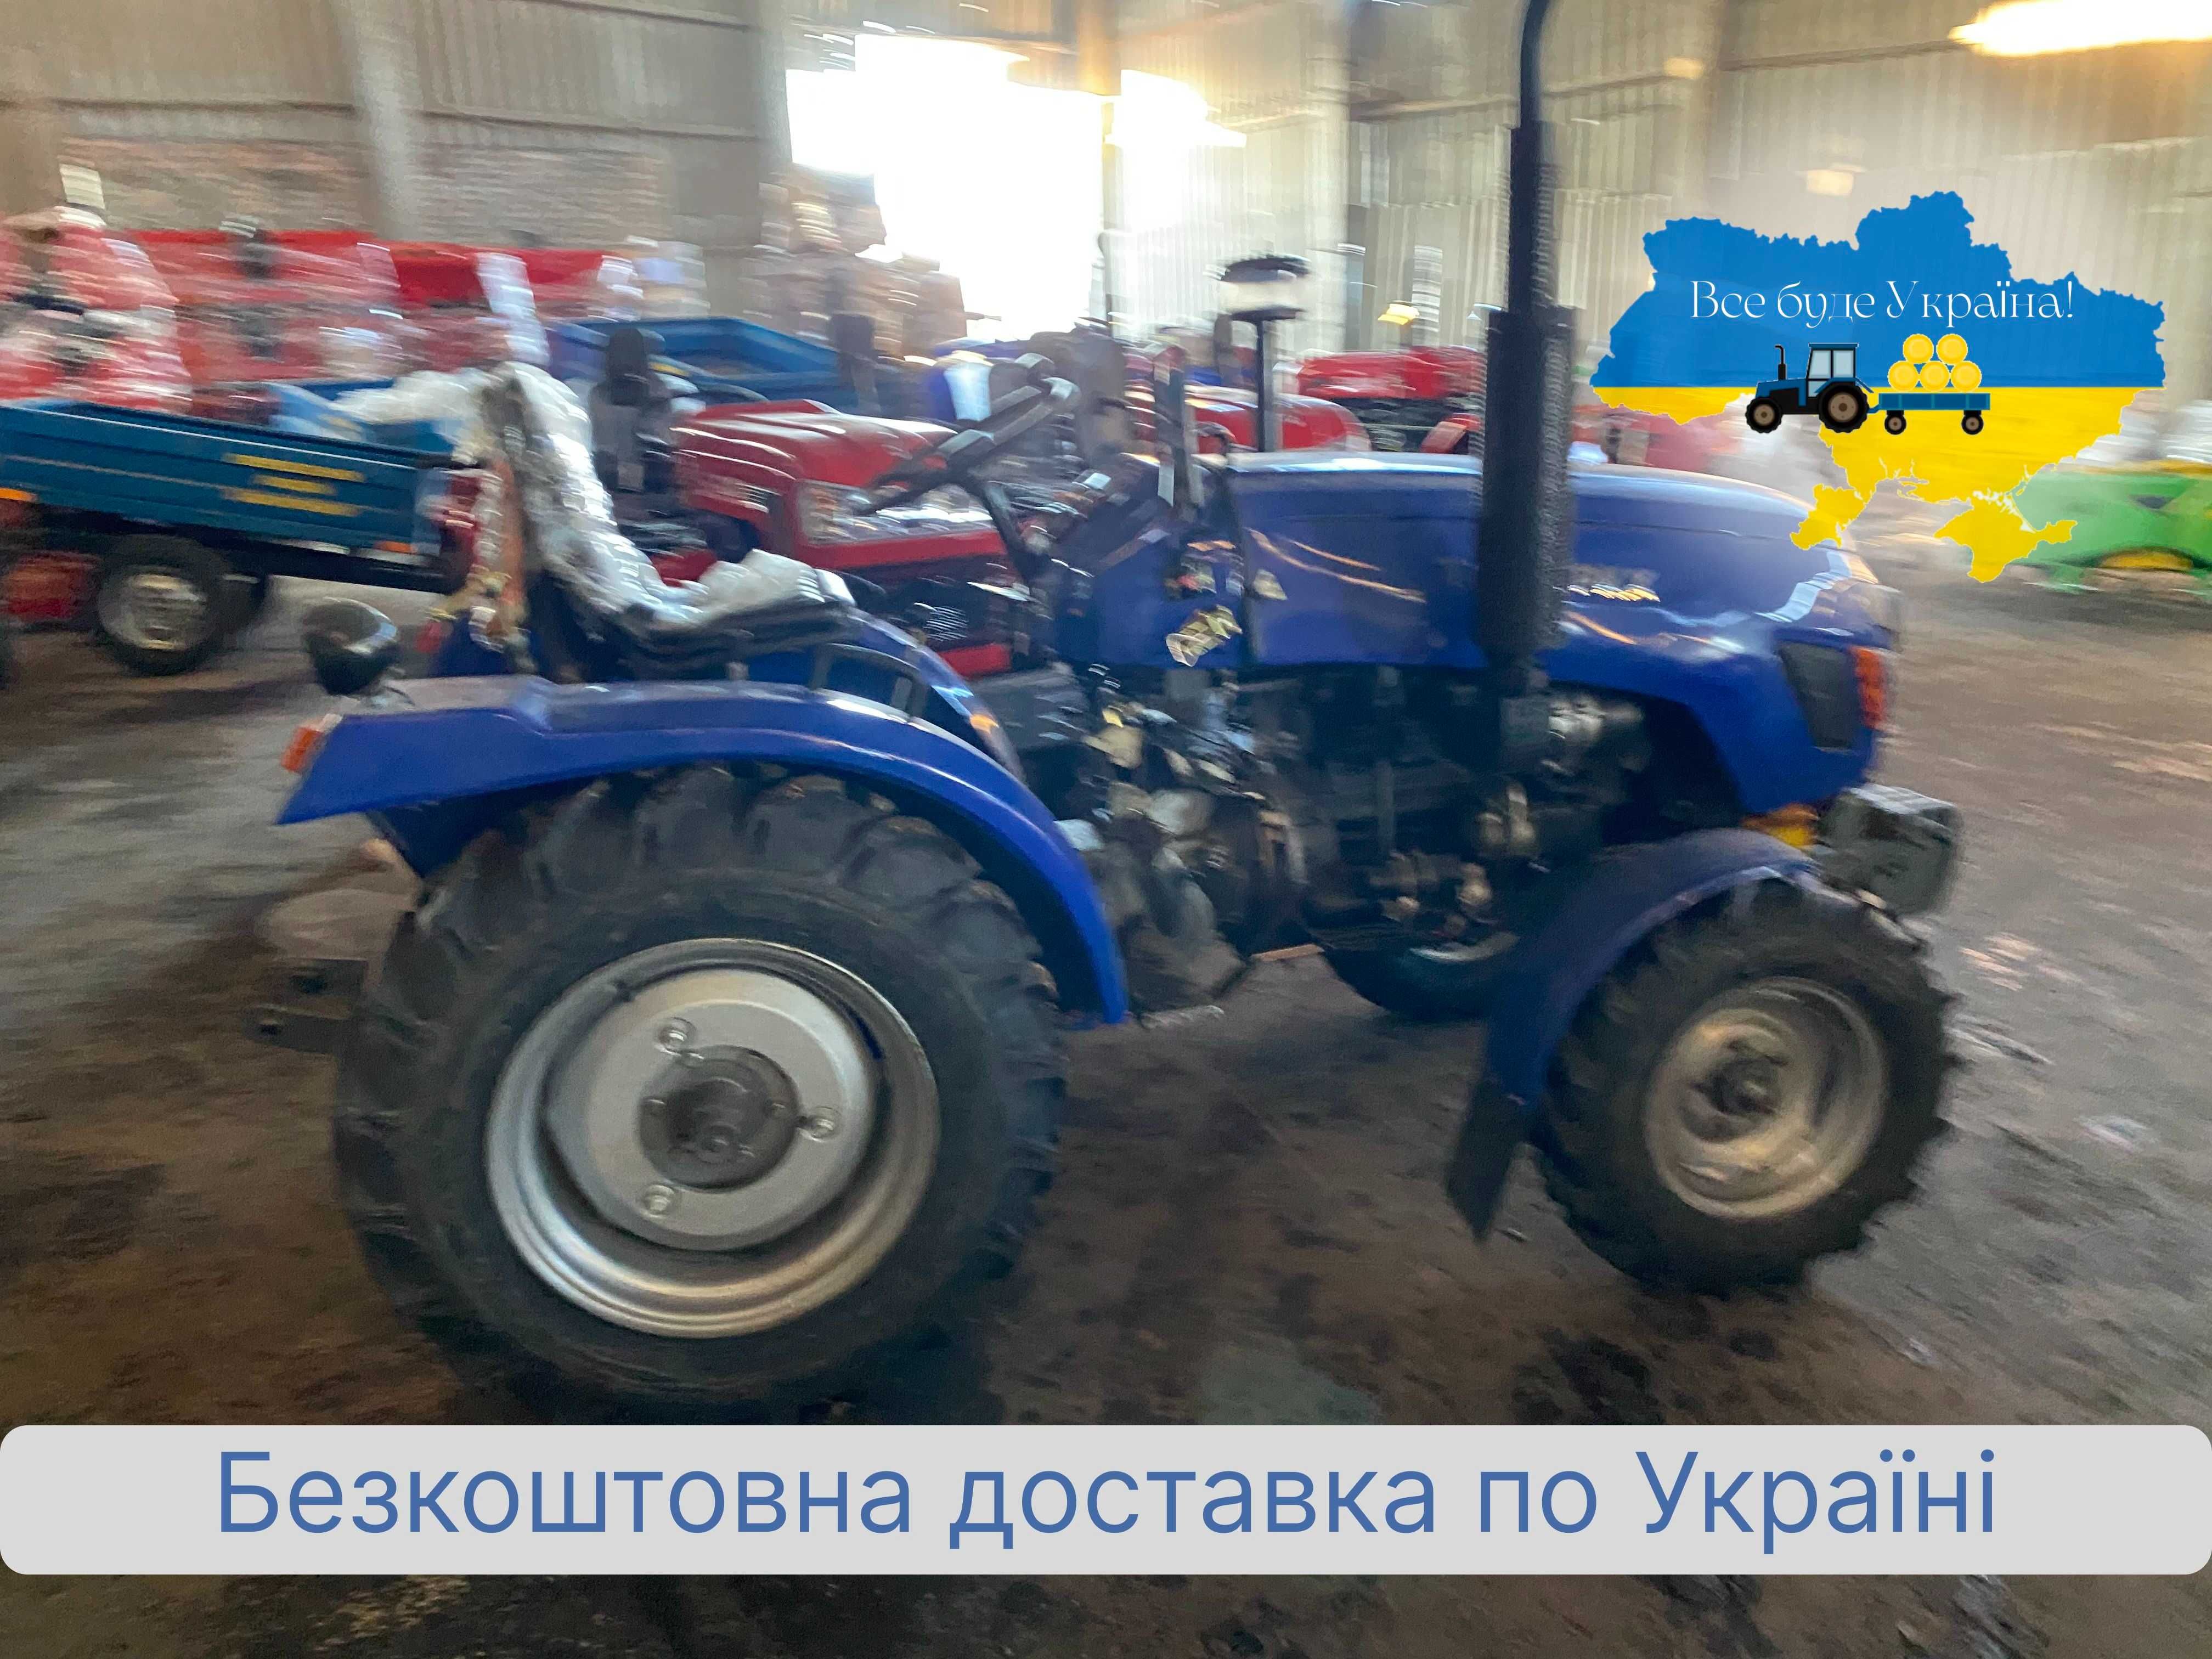 Трактор Синтай XT 240 TPKX , доставка БЕСПЛАТНАЯ, МАСЛА, Гарантия 2г